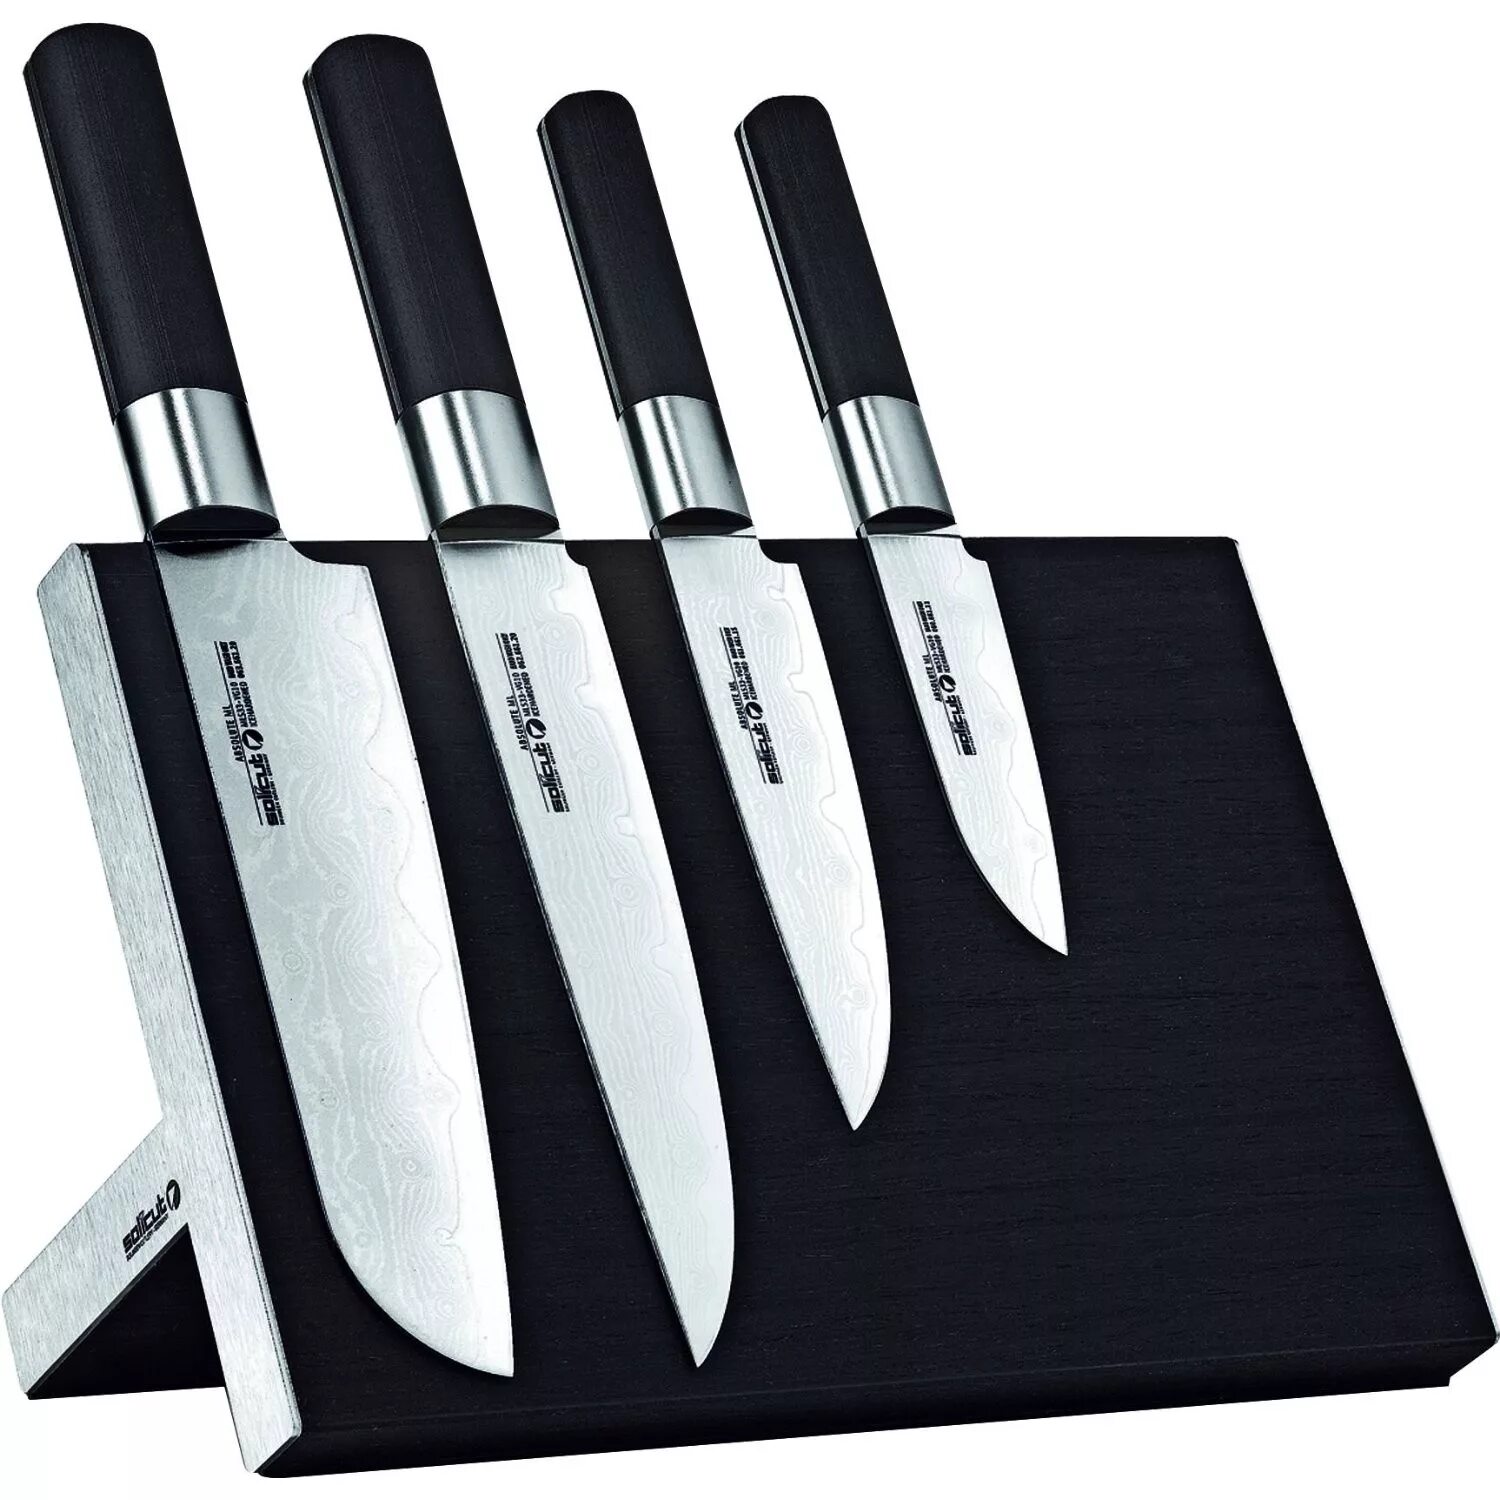 Интернет кухонные ножи. Кухонный нож. Набор ножей для кухни. Дизайнерские кухонные ножи. Нажми куханые.